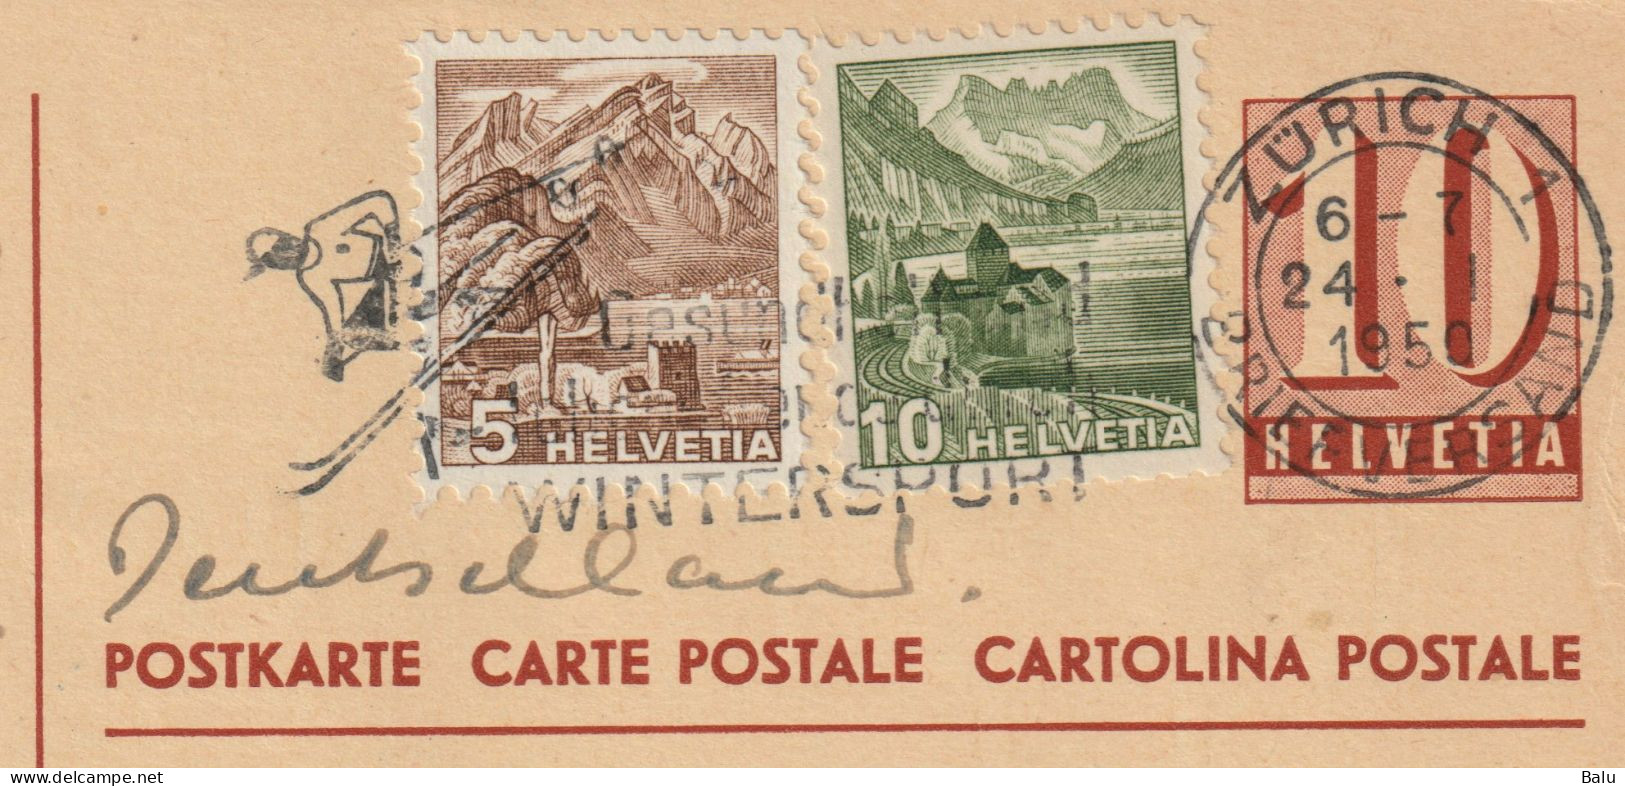 Schweiz 2 Ganzsachen Postkarten Ziffer 10 C. Zürich 1950 Mit Je 2 Zusatzfrankaturen 5 + 10c., 3 Scans, Entier Postal - Enteros Postales